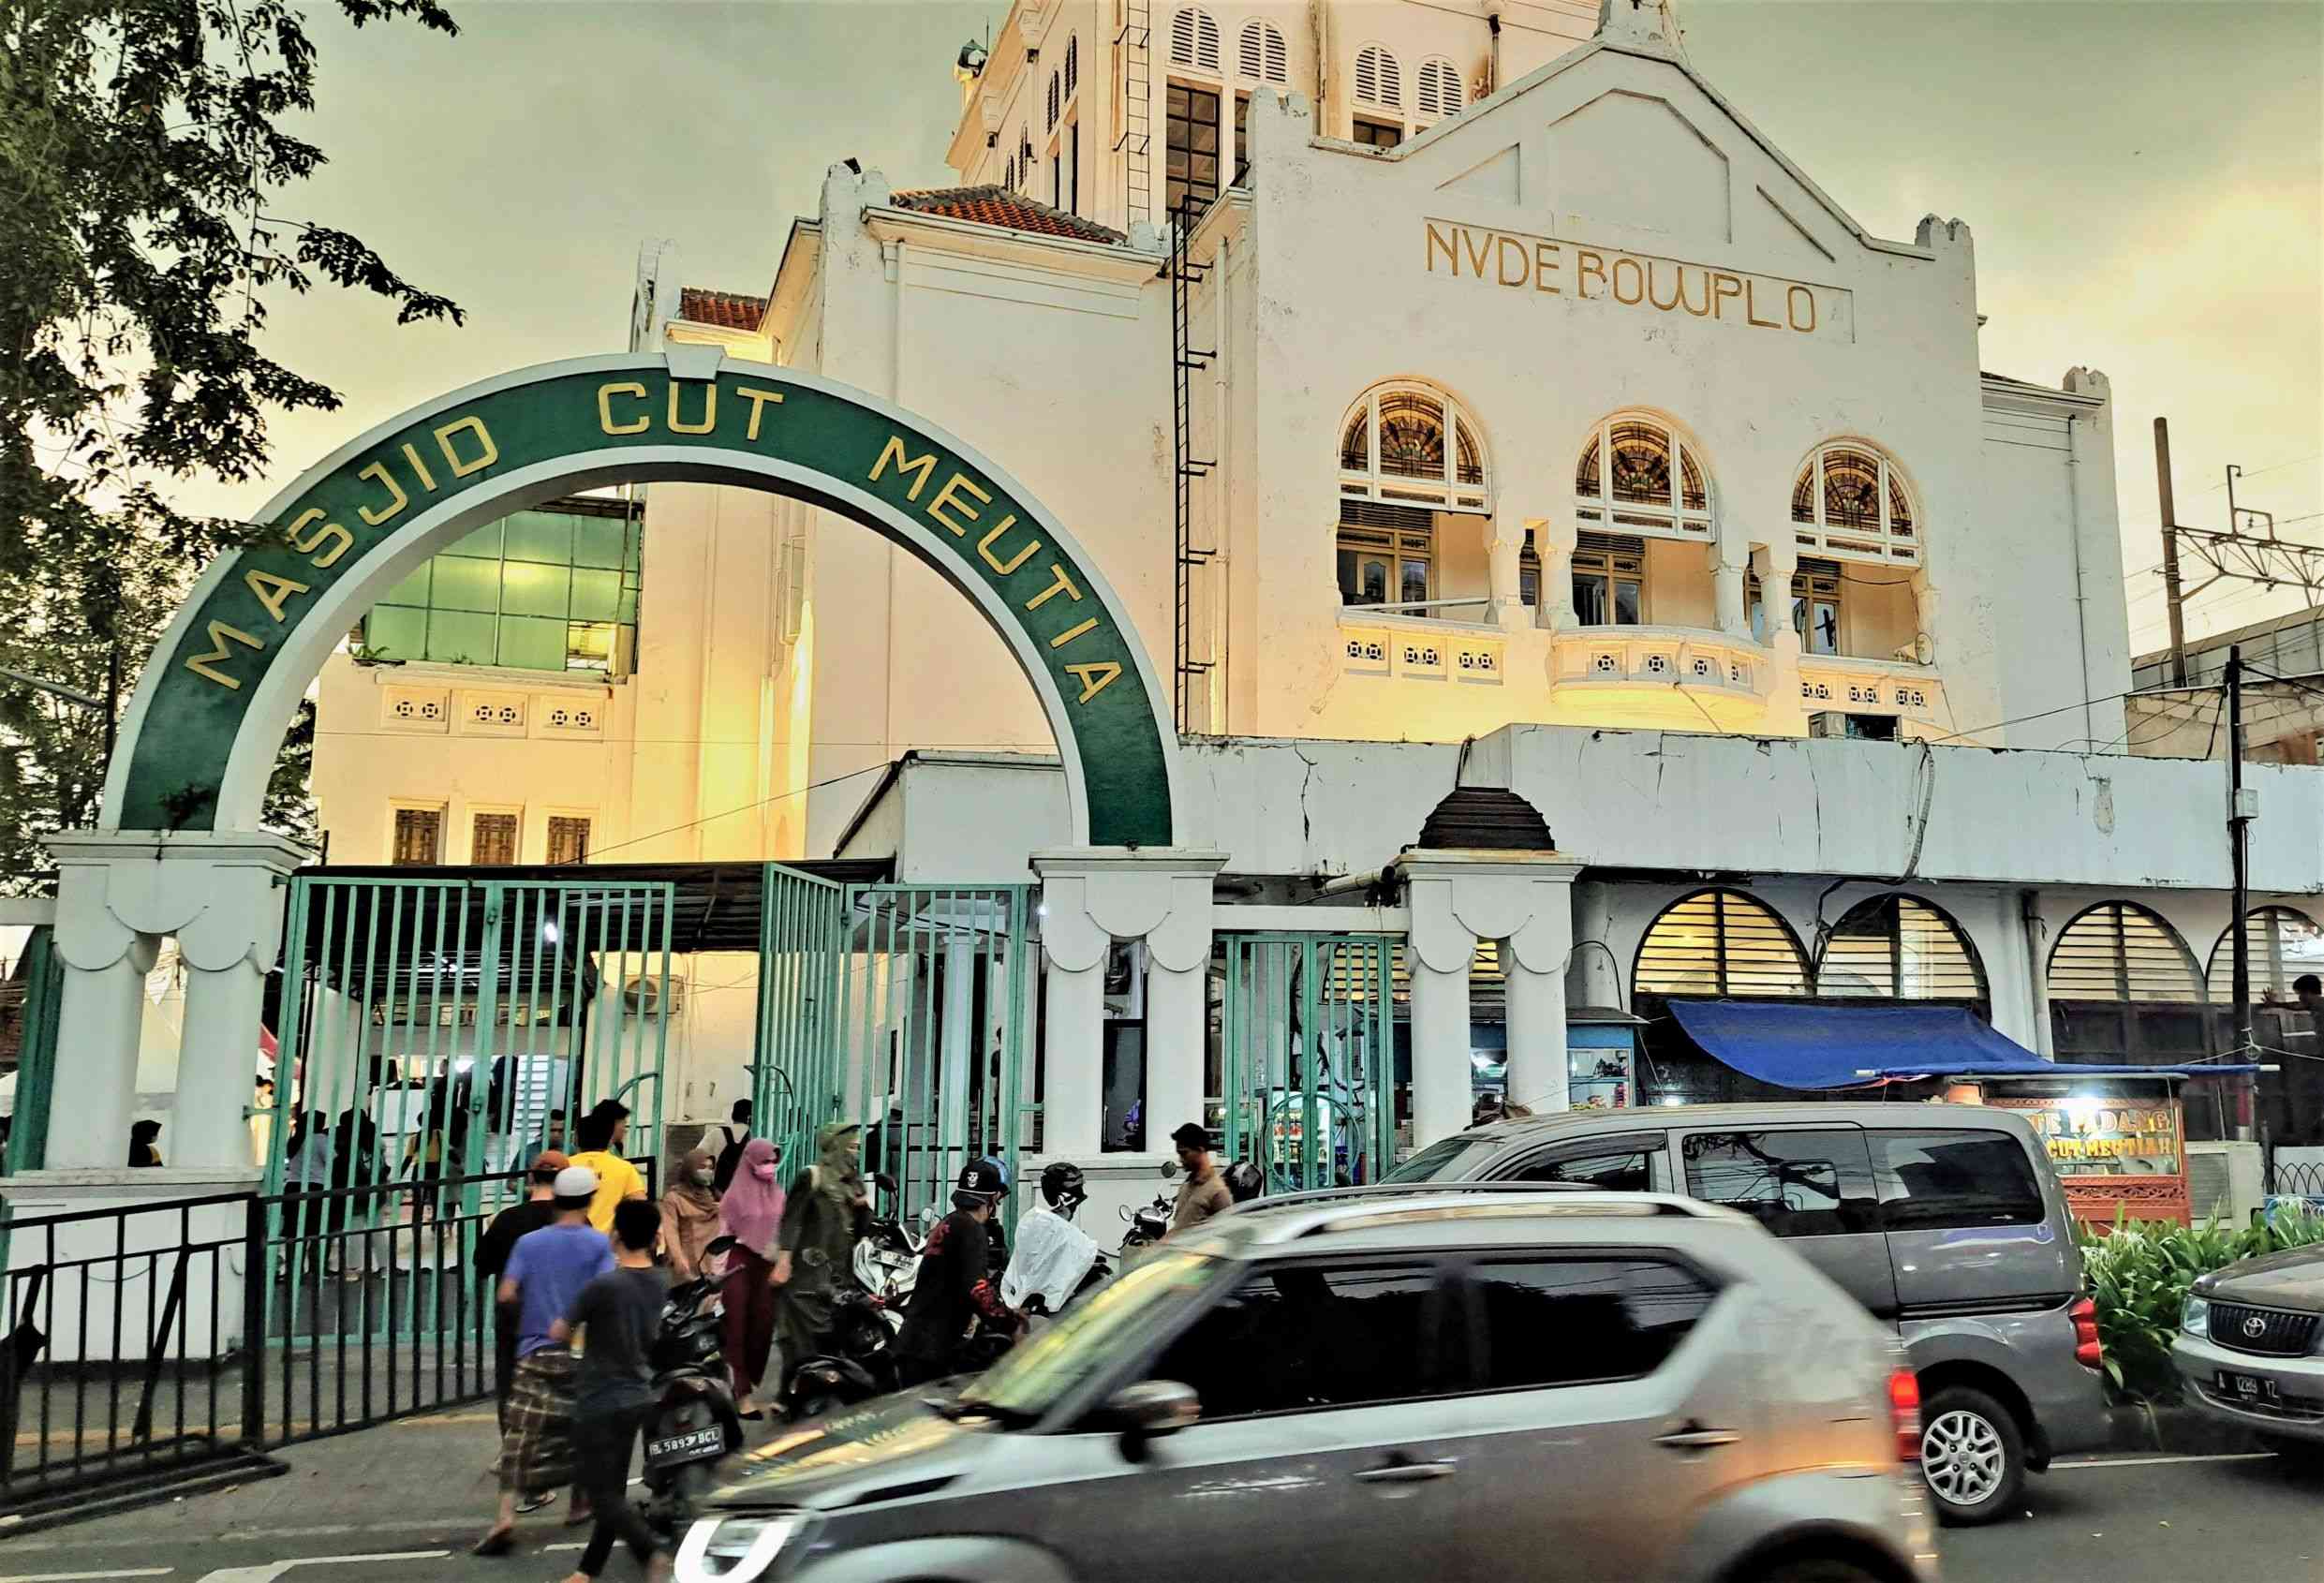 Wisata Religi ke Masjid Cut Meutia yang Autentik